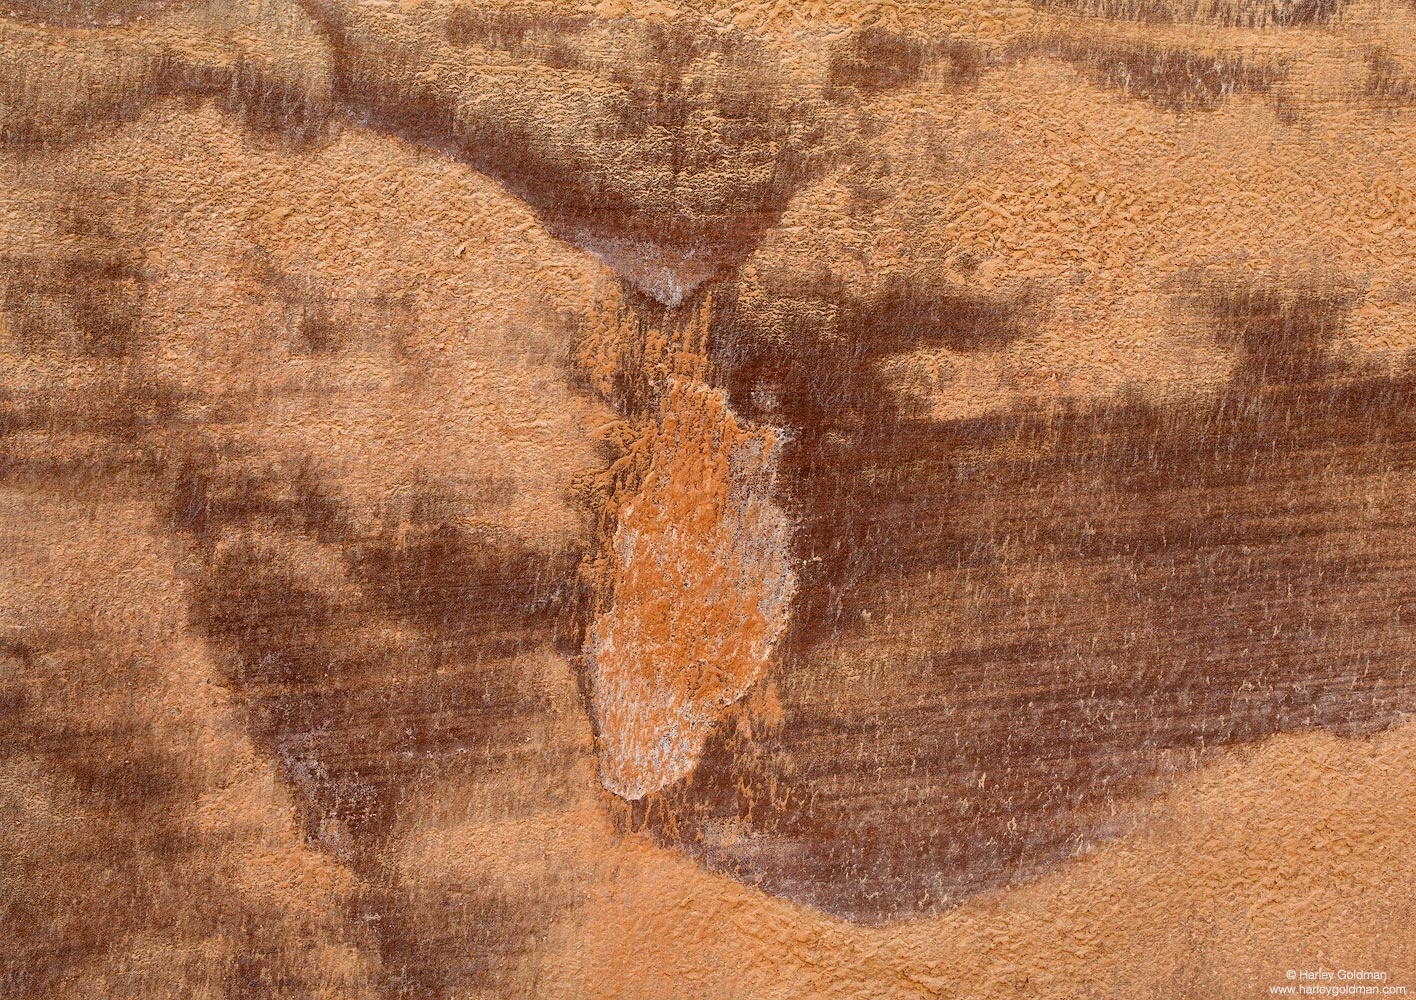 Utah, sandstone, texture, pattern